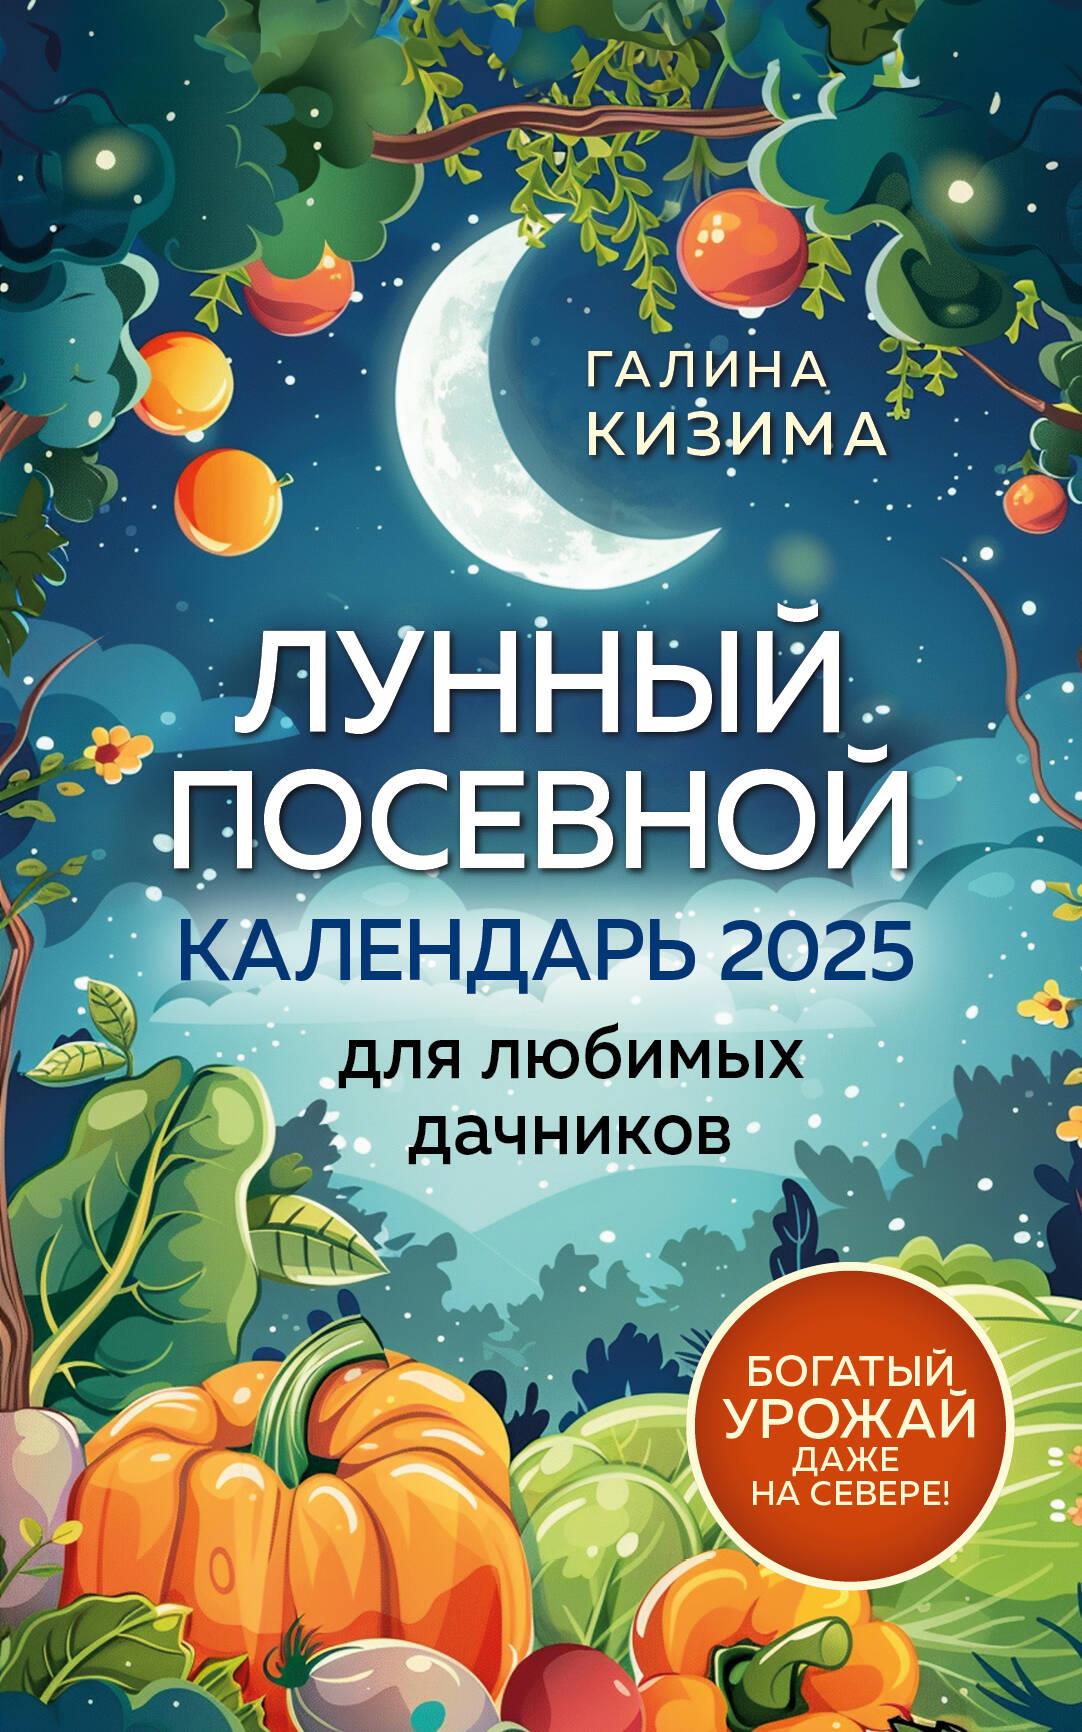 Лунный посевной календарь для любимых дачников 2025 от Галины Кизимы